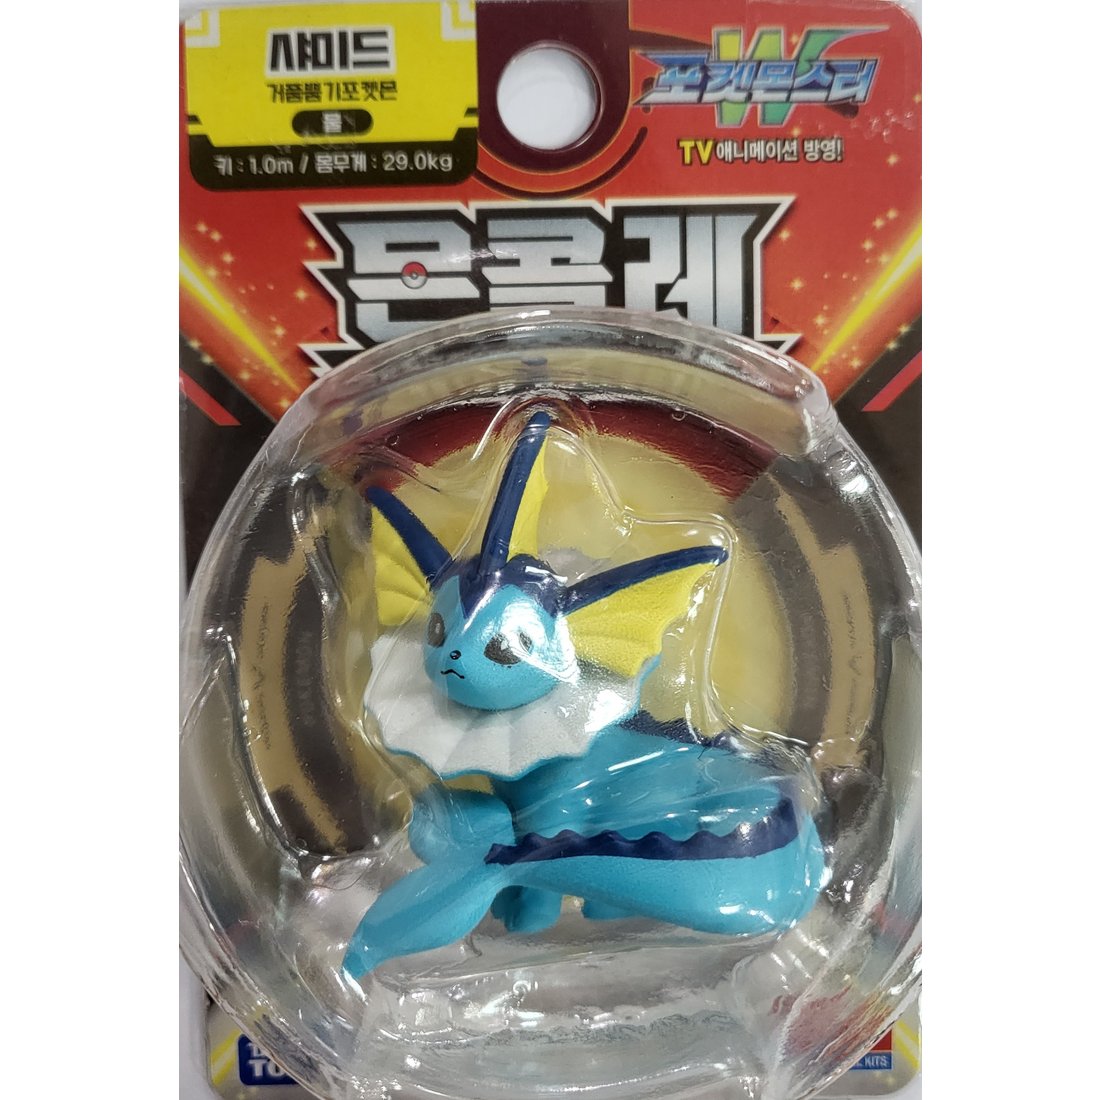 Pokemon VAPOREON Moncolle Mini Figure Academy Takara tomy Korean Toys